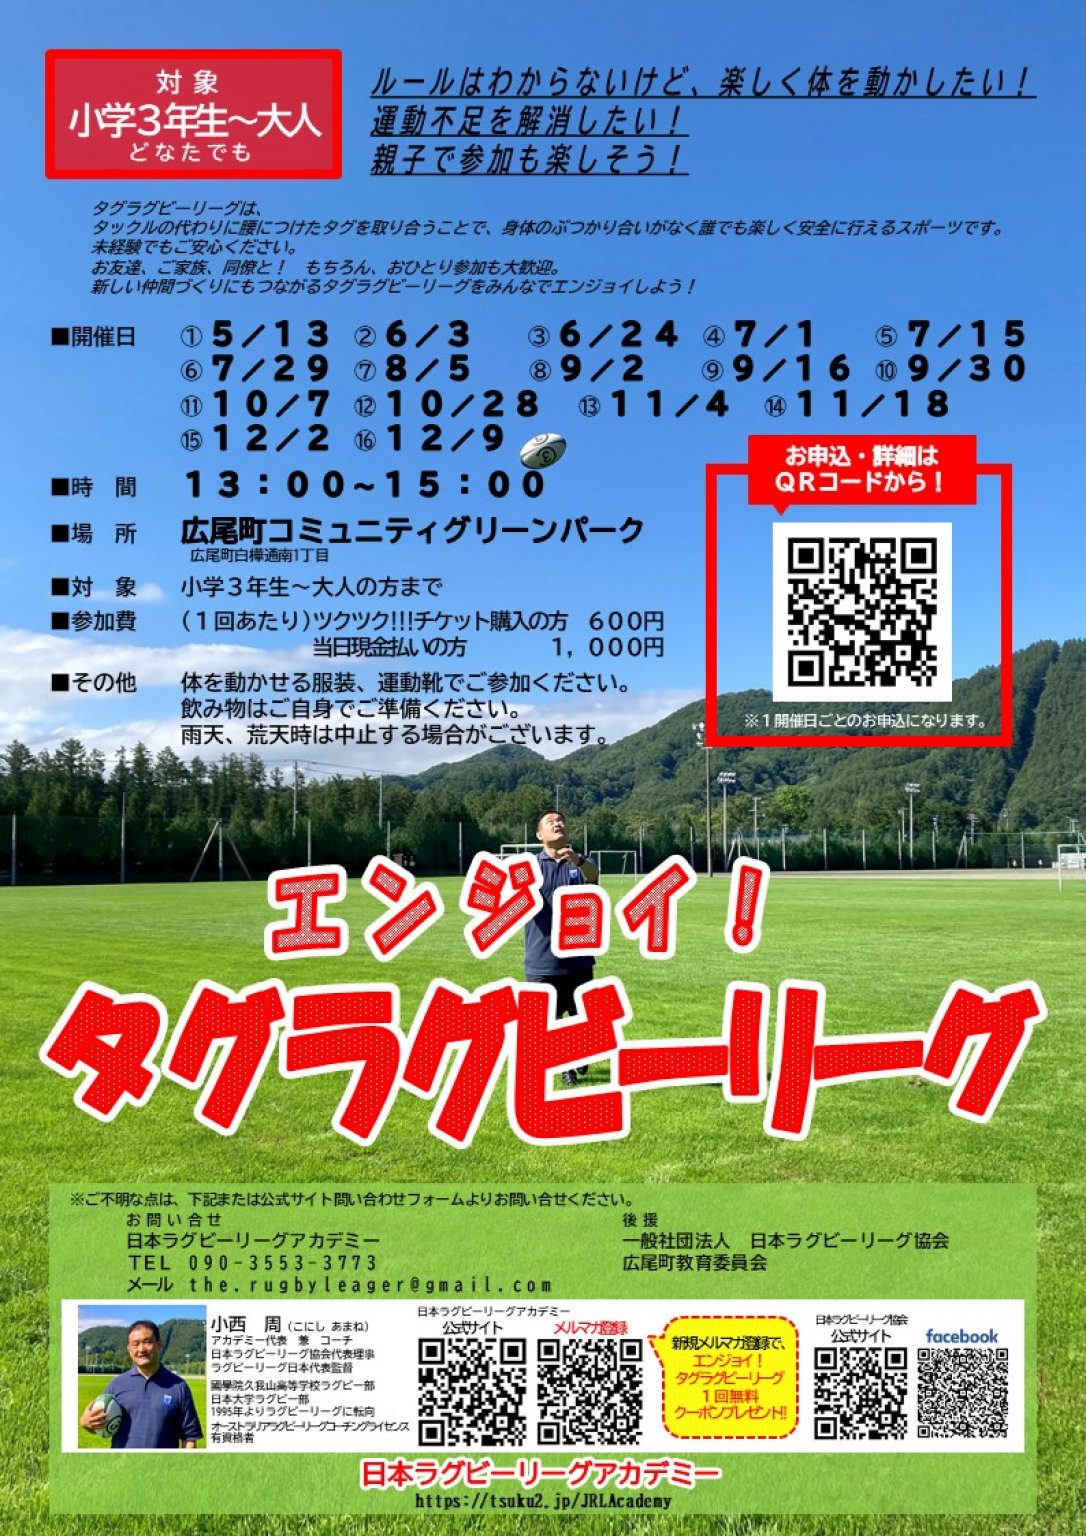 エンジョイタグラグビーリーグチケット in 広尾町コミュニティグリーンパーク